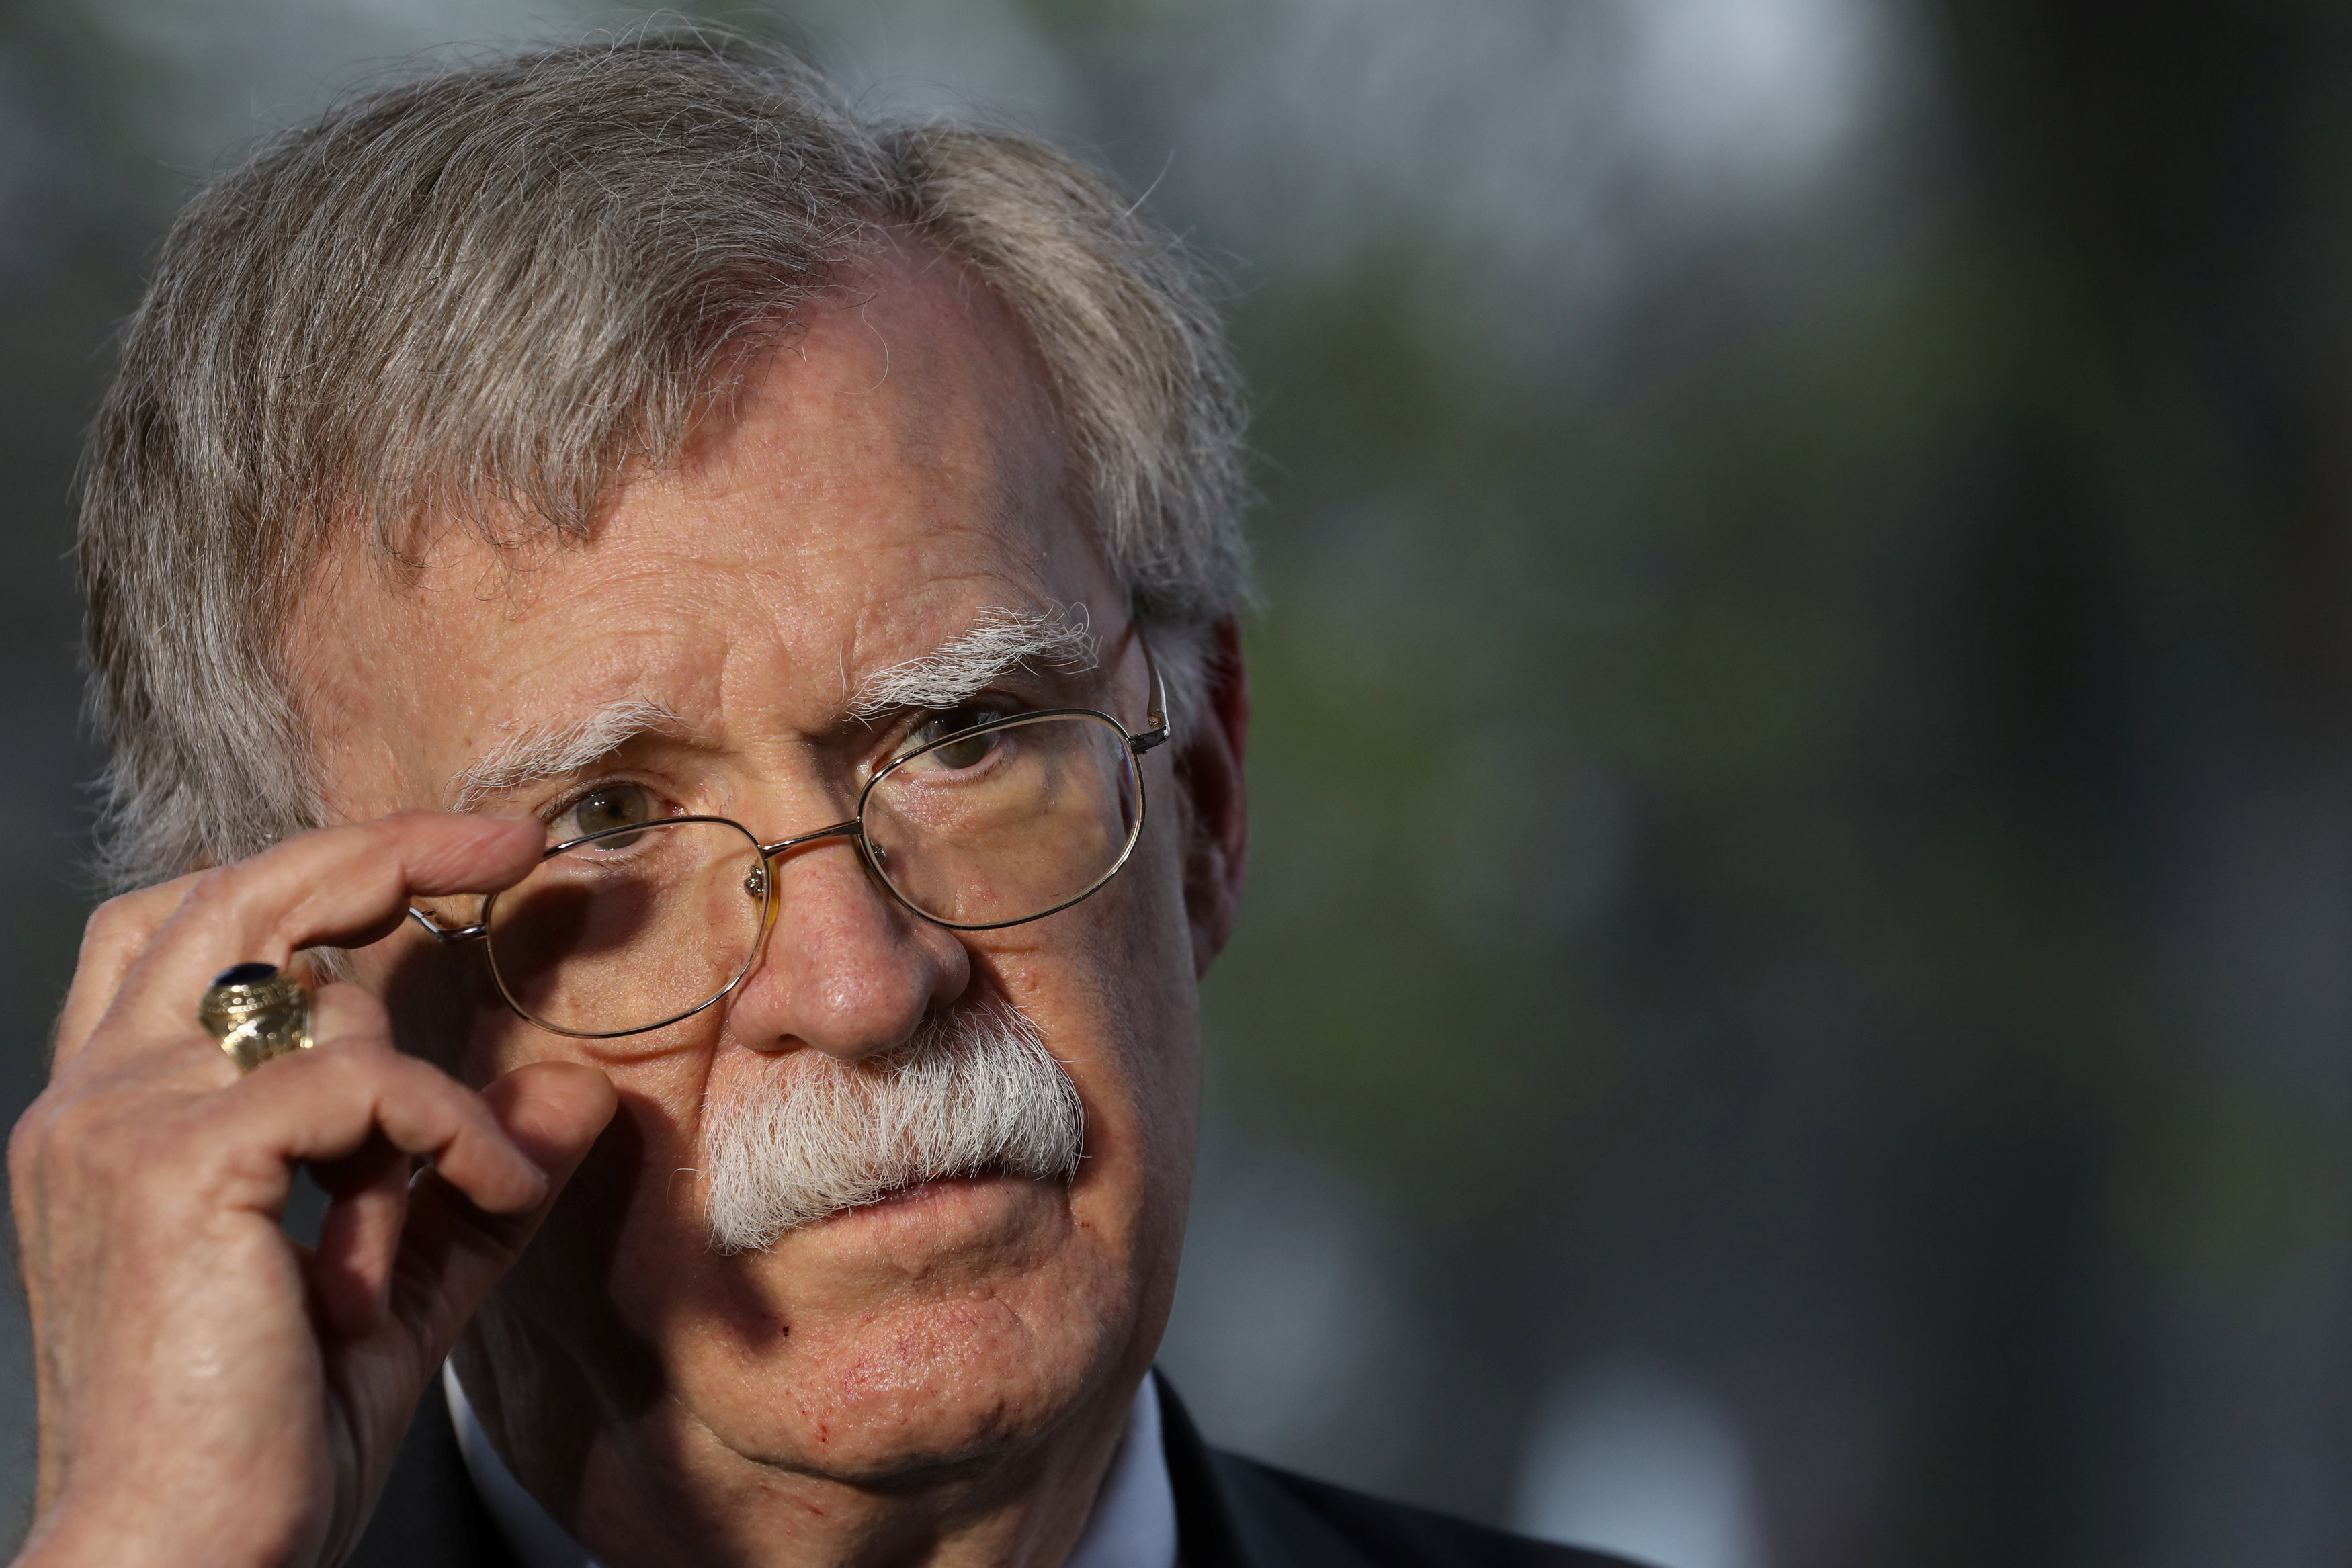 Medidas desesperadas de Maduro no resolverán los problemas que él creó, dice Bolton